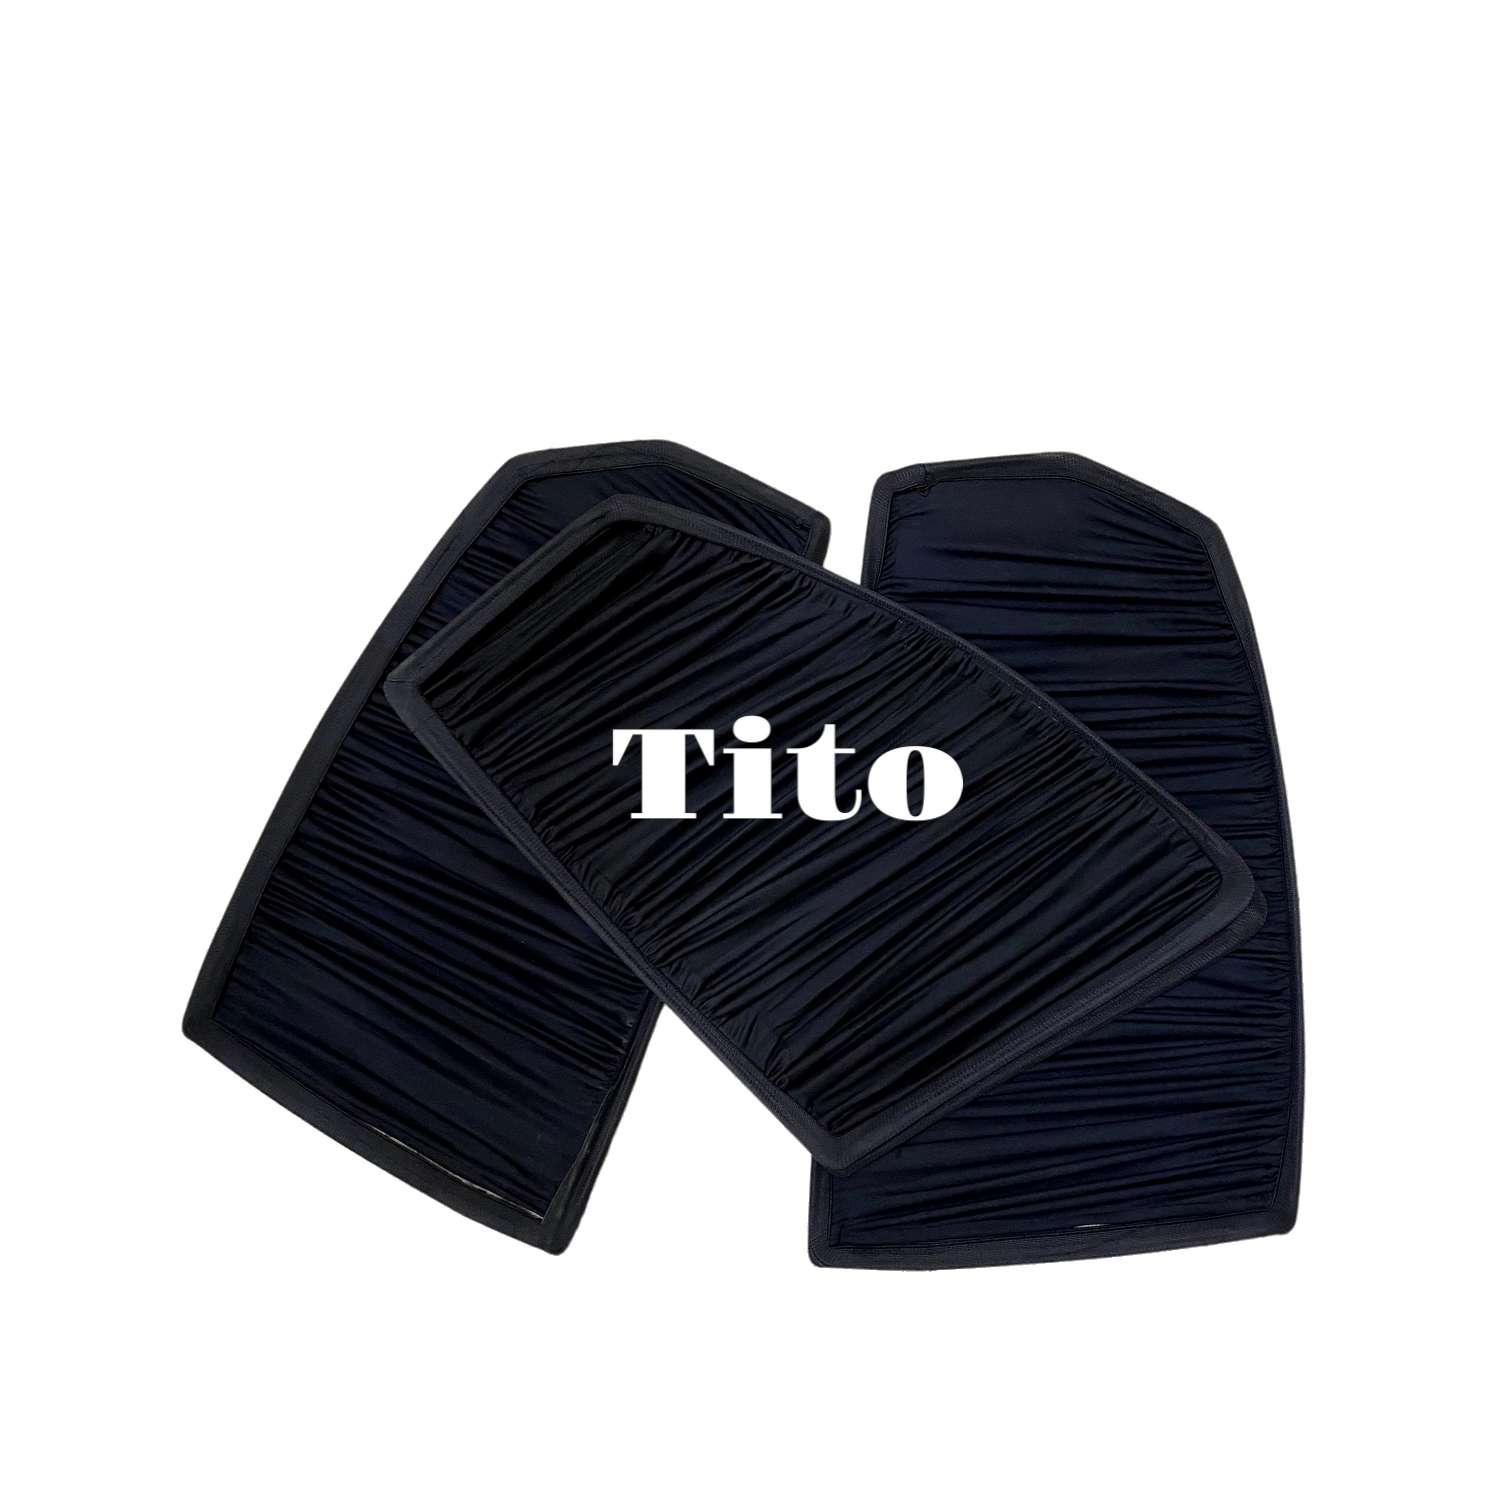 Tito accessories